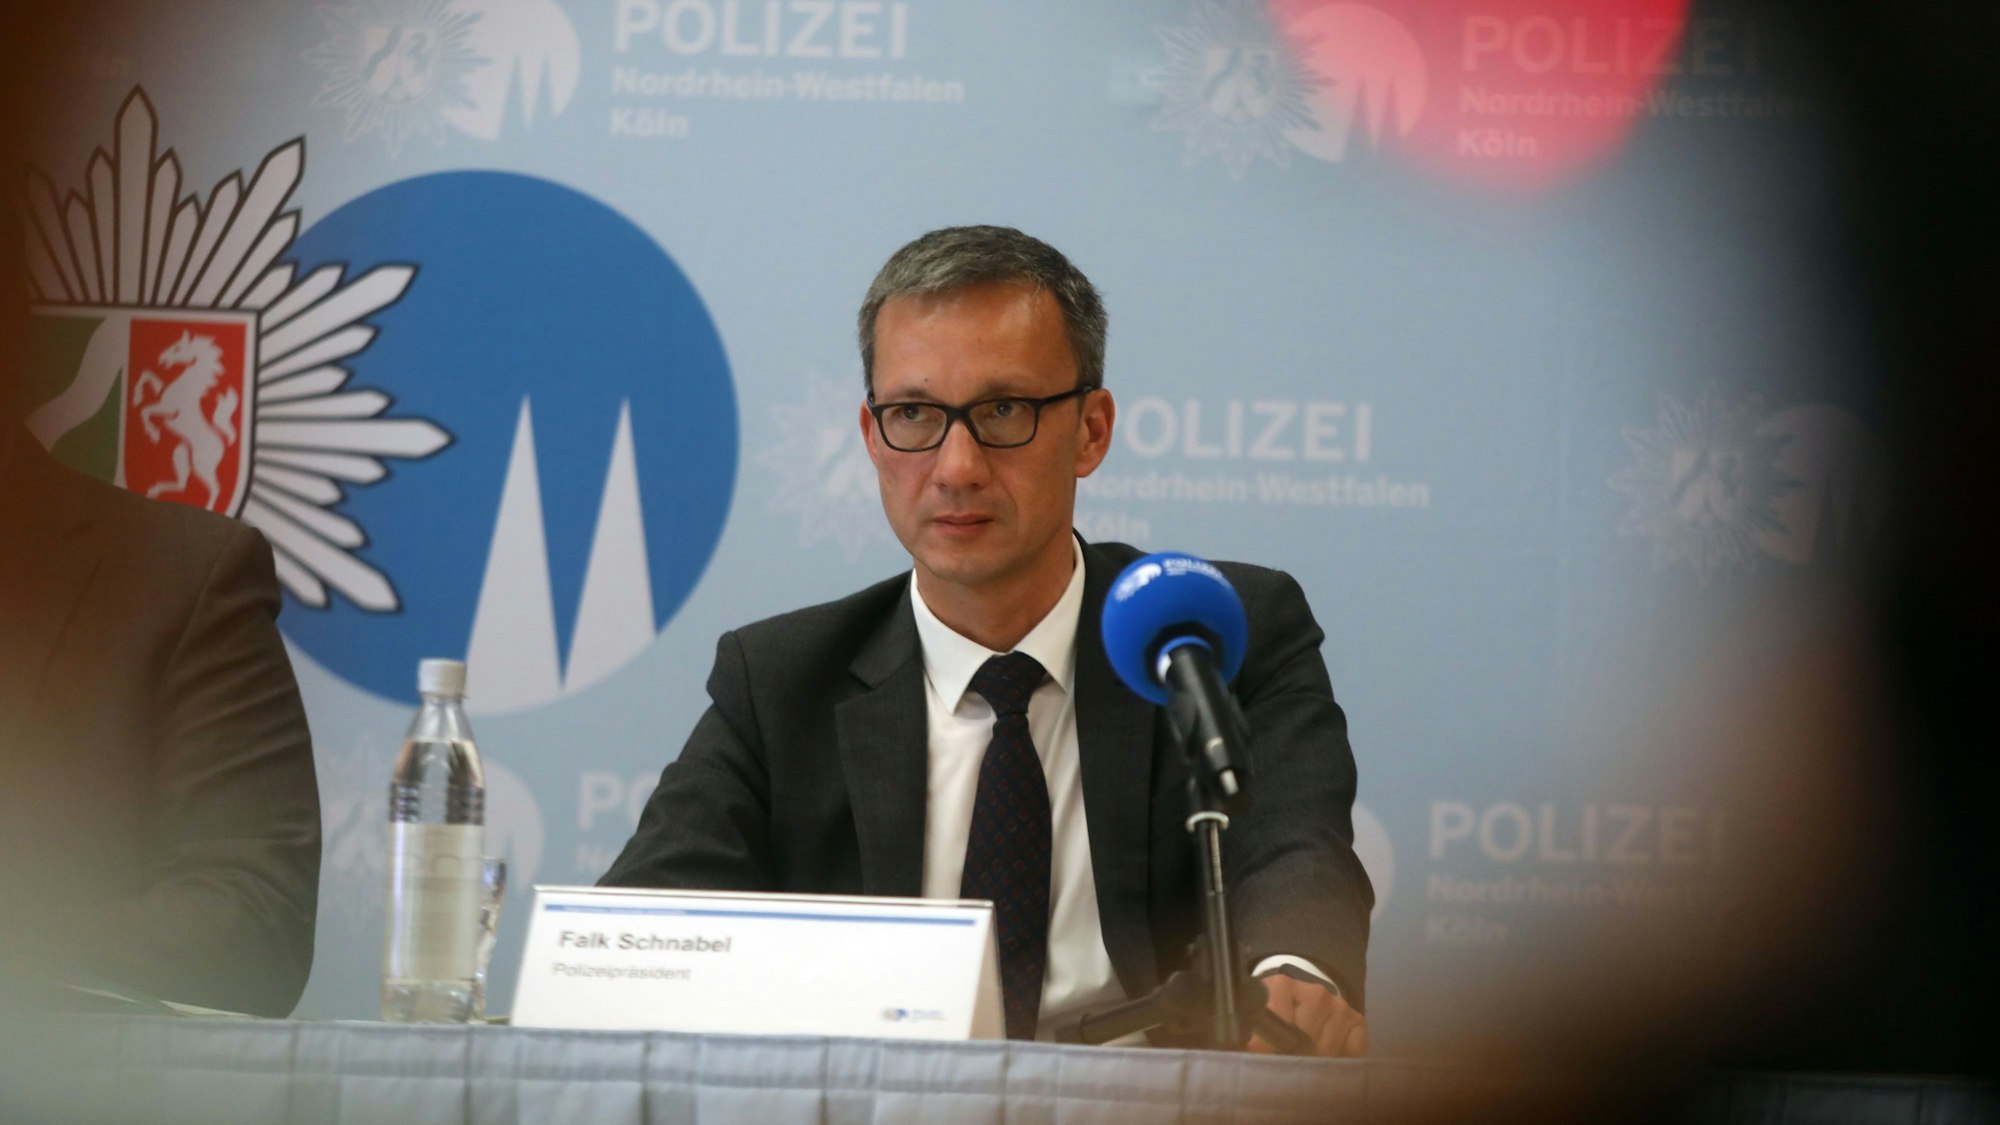 Kölns Polizeipräsident Falk Schnabel sitzt bei einer Pressekonferenz an einem Tisch